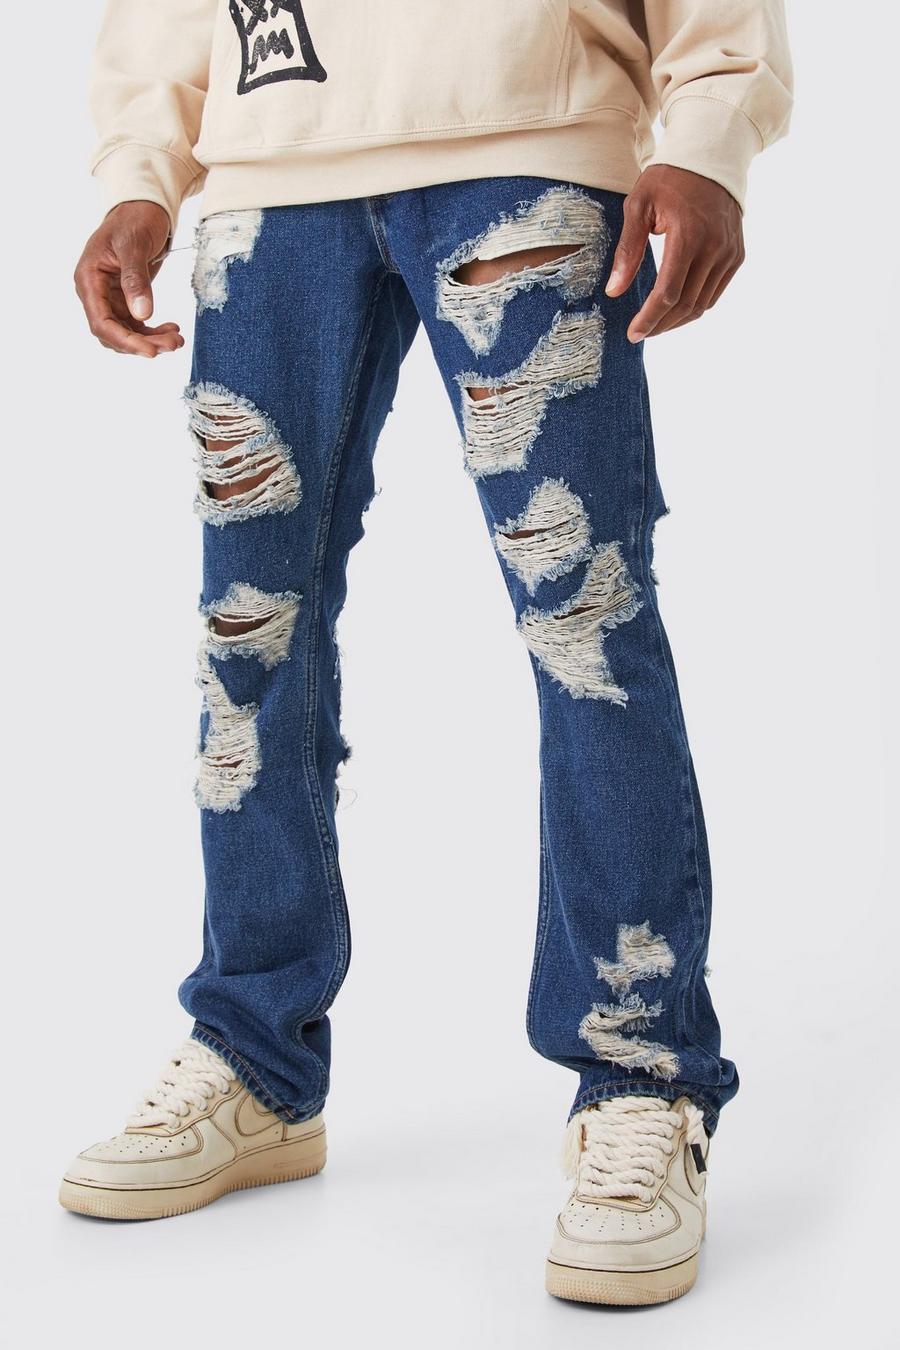 Jeans Official Slim Fit a zampa in tessuto rigido con applique, Antique wash